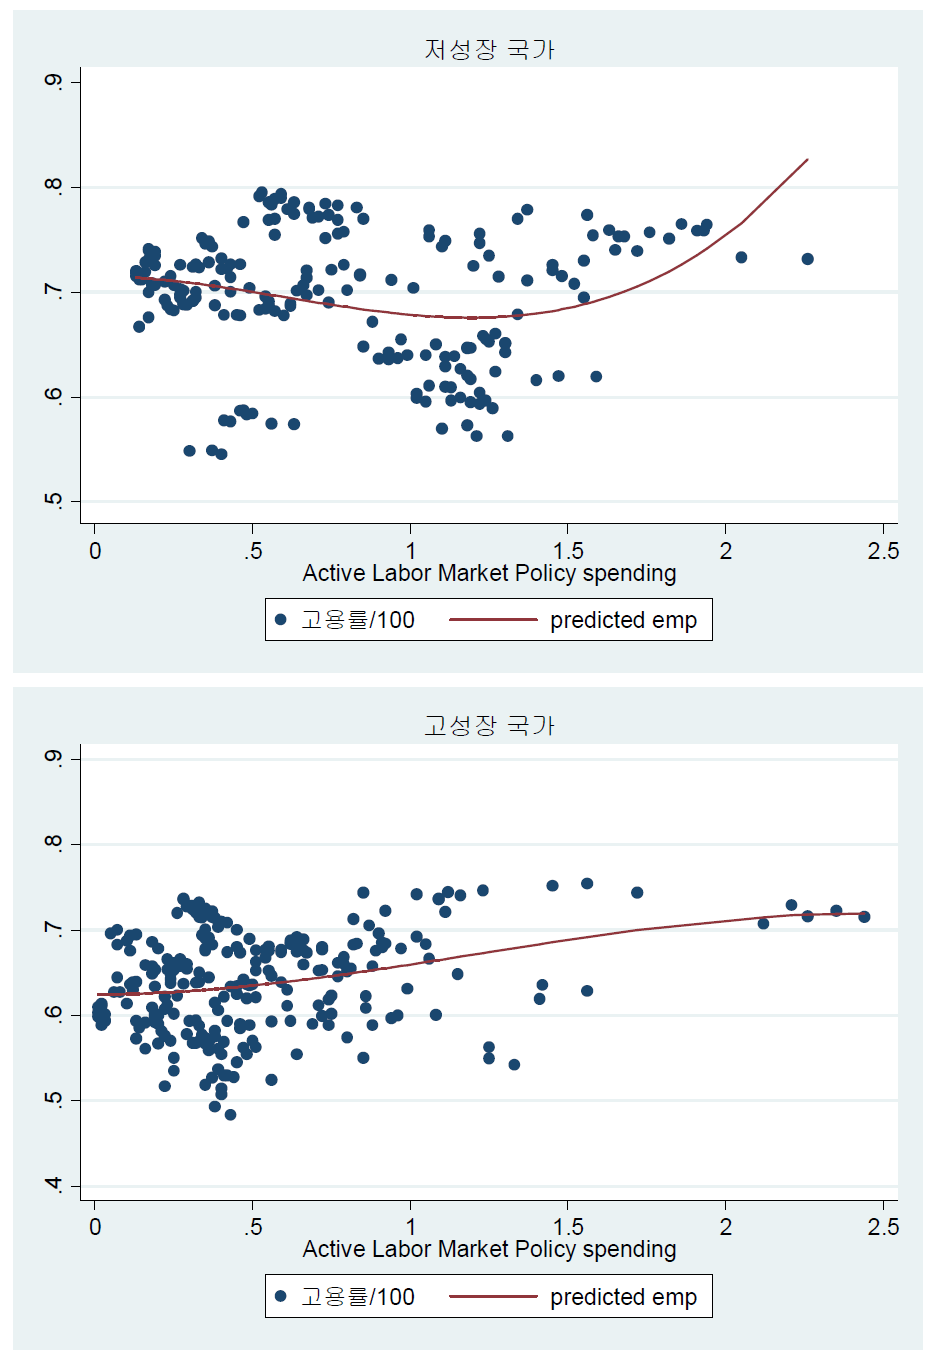 성장유형별 적극적노동시장정책지출비중과 고용률 상관계수